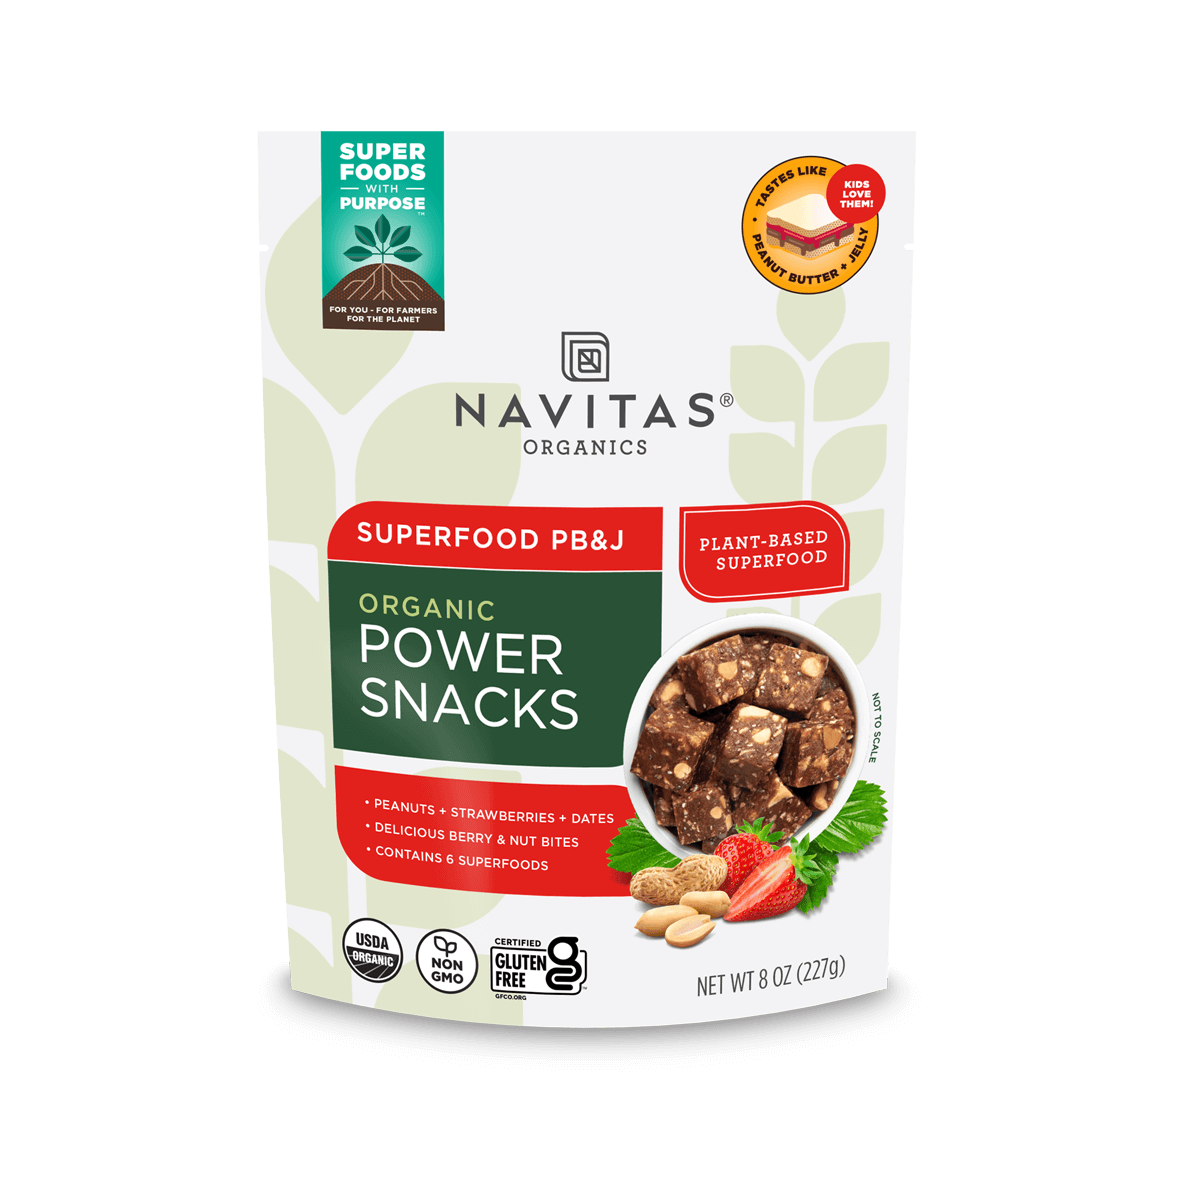 Navitas Organics Superfood PB&J Power Snacks 8 oz. front of bag.